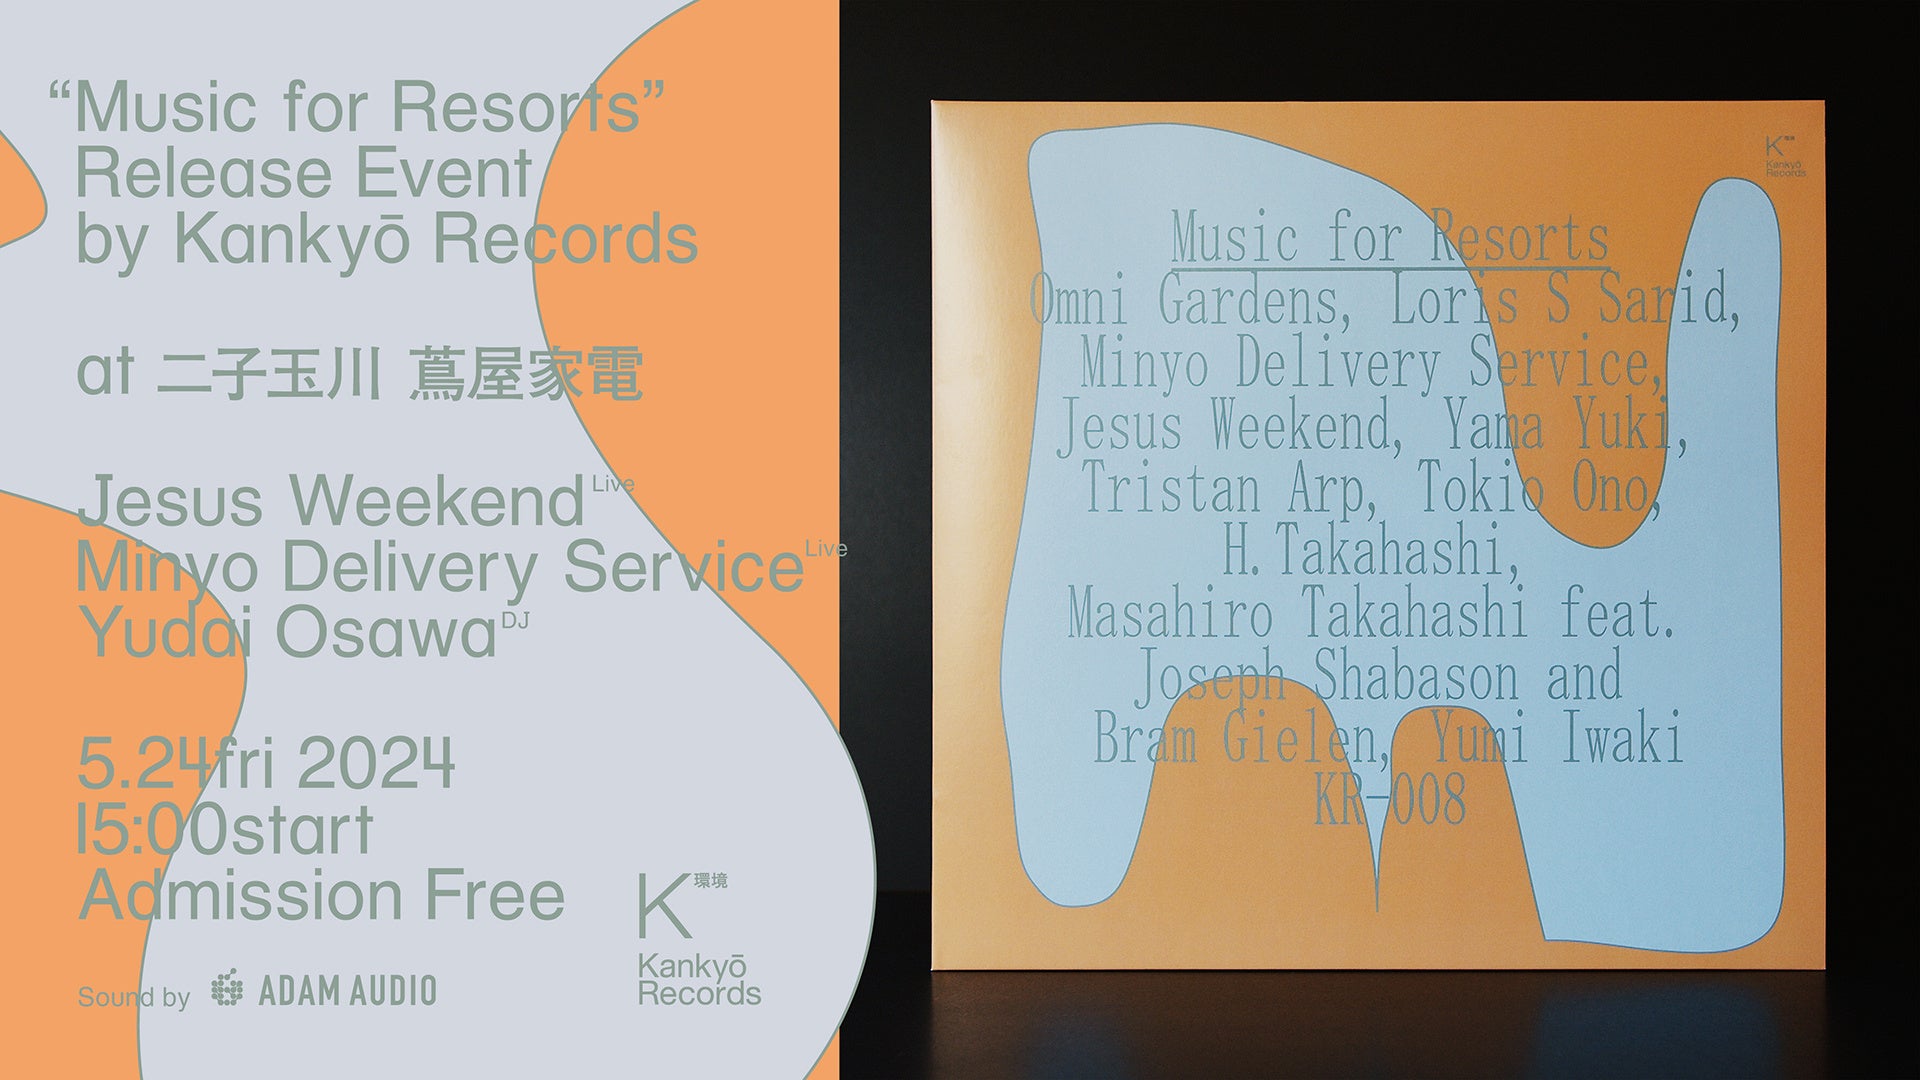 リサイクル素材を使ったレコード『Music for Resorts』リリースイベント、5/24(金) 二子玉川 蔦屋家電イベントスペースにて開催！